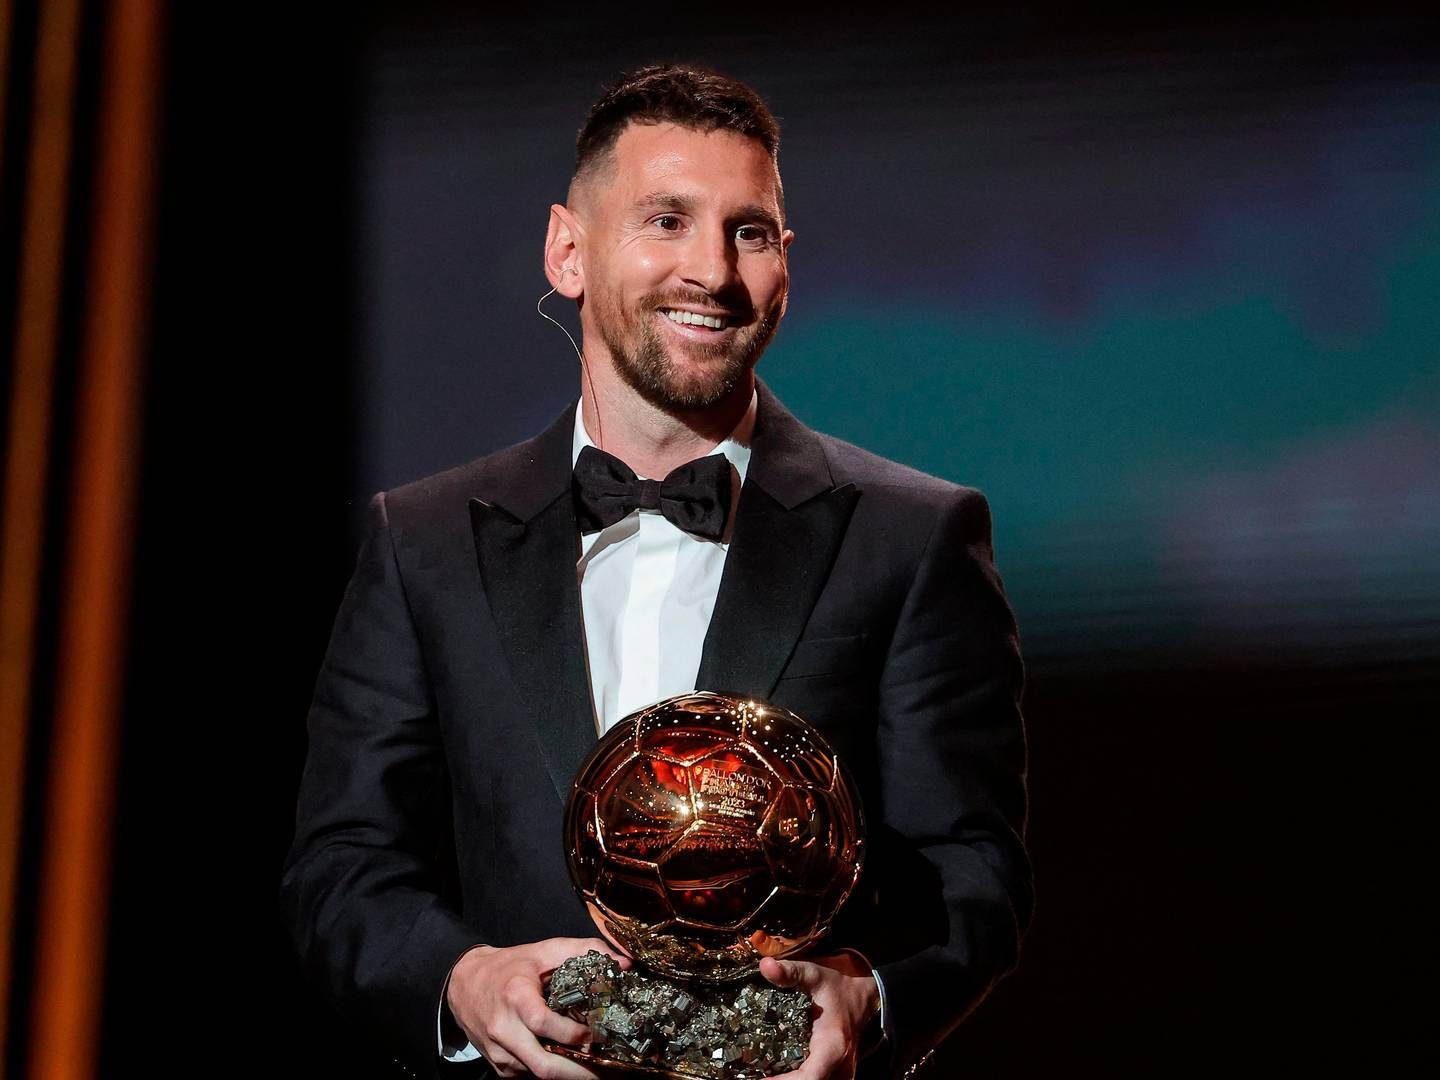 Lionel Messi er blandt de atleter, som repræsenterer en fankultur, der dyrker individet frem for fællesskabet - en tendens et flertal af sportsmediechefer mener vil vokse. | Foto: Franck Fife